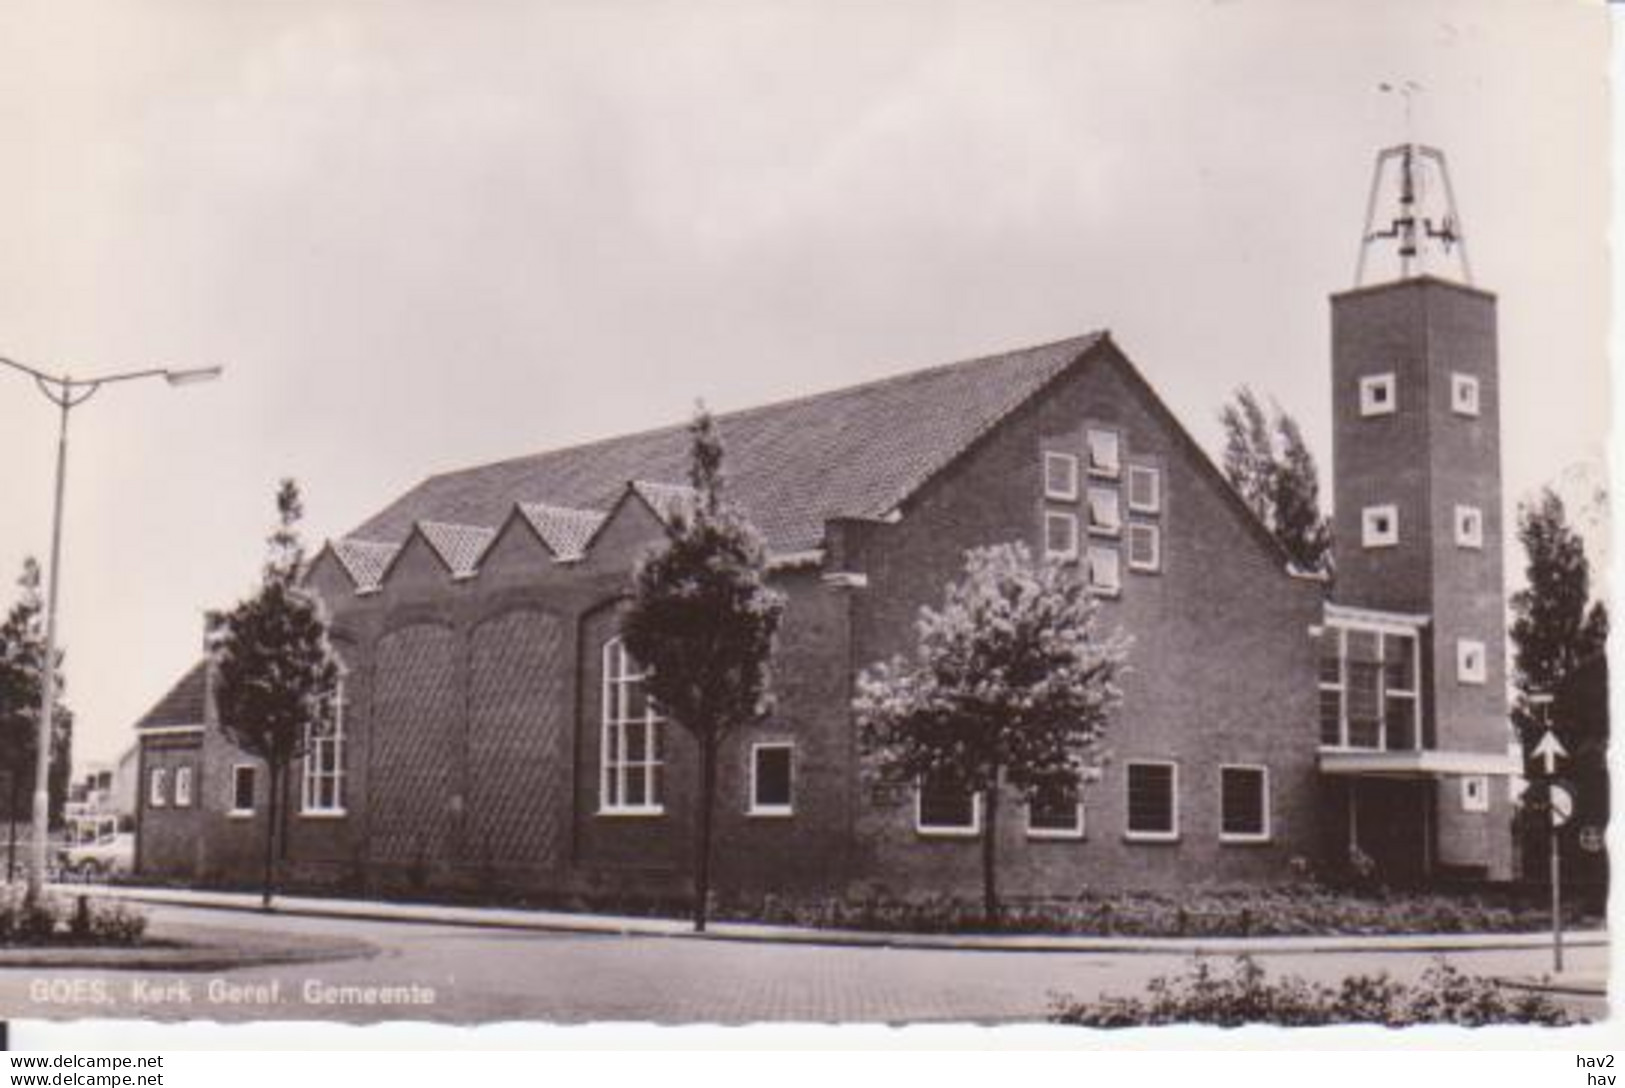 Goes Gereformeerde Gemeente Kerk  RY 8977 - Goes